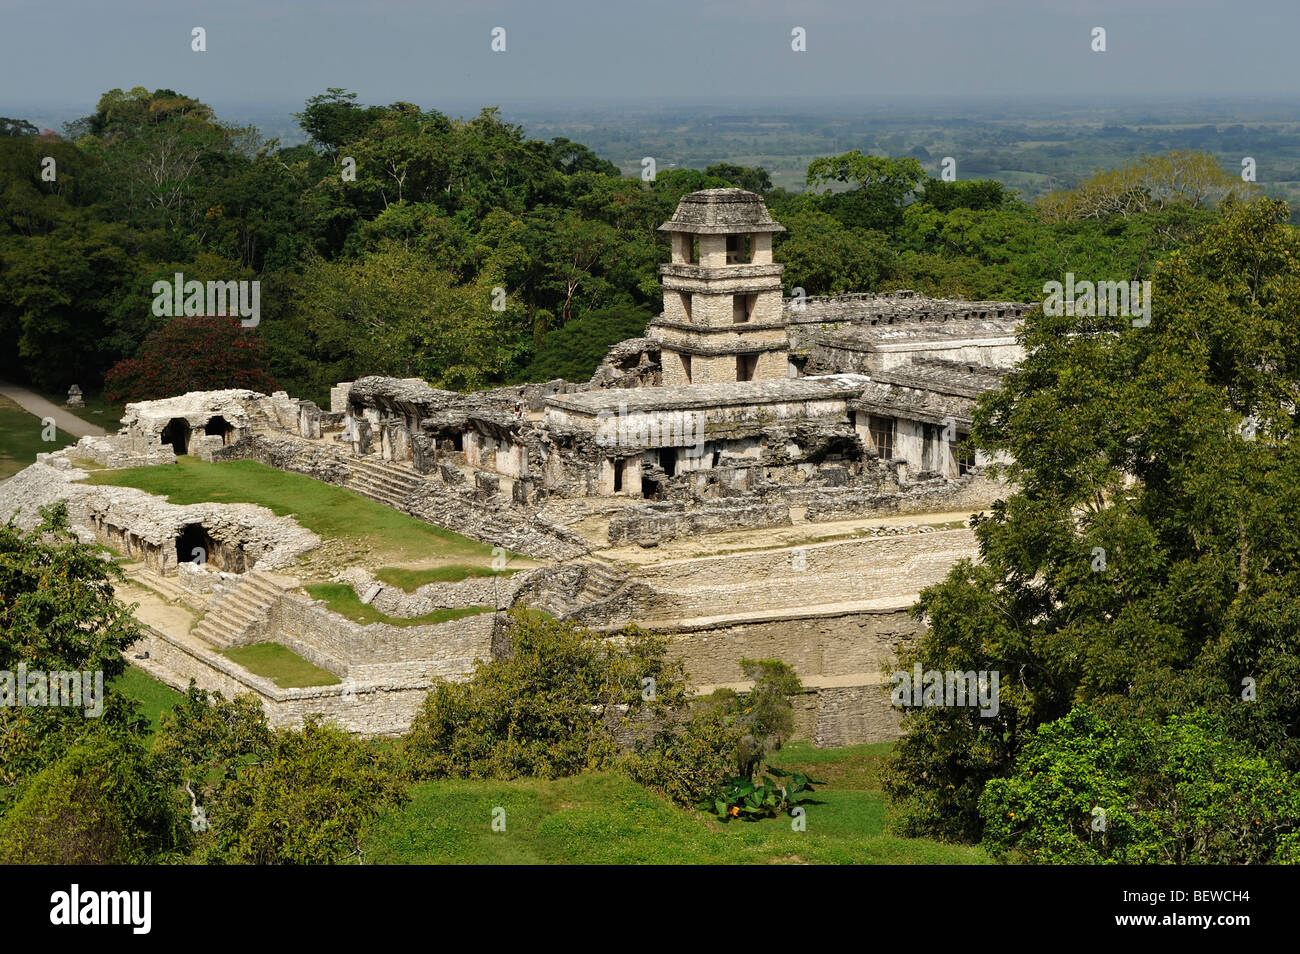 Ruine d'un palais Maya de Palenque, Chiapas, Mexique, elevated view Banque D'Images